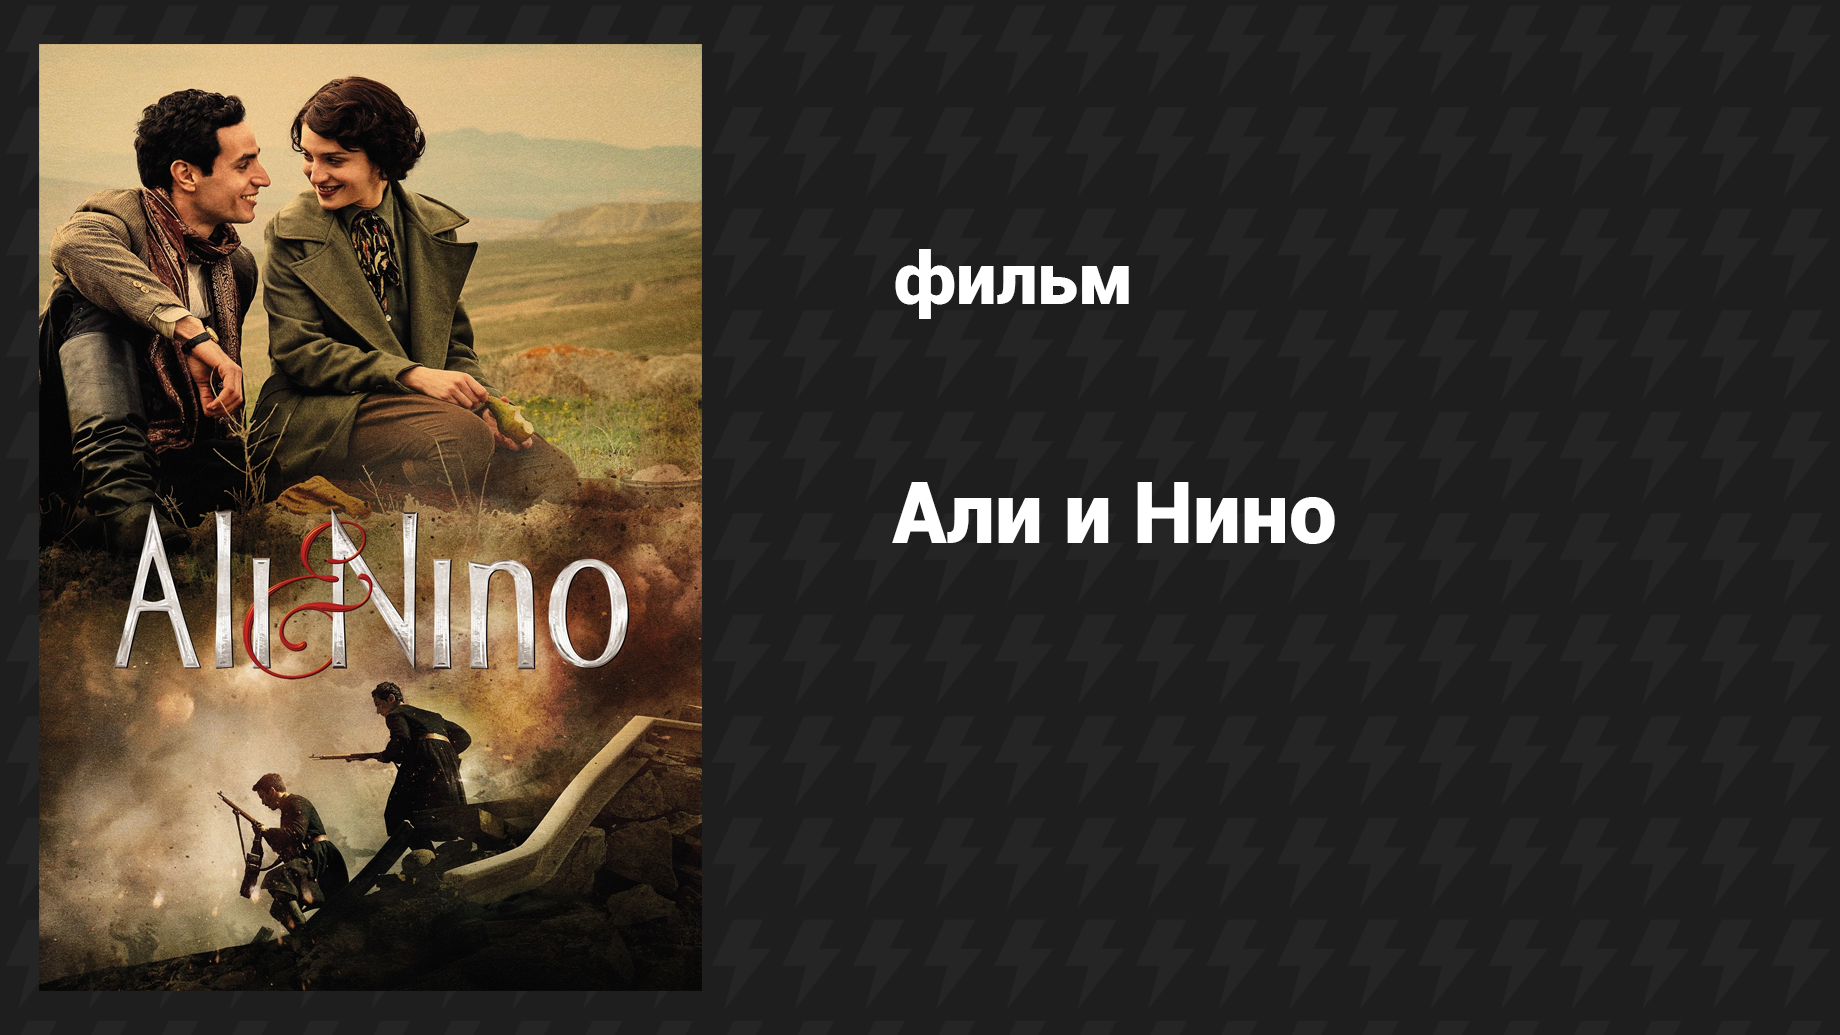 Али и Нино (фильм, 2015)